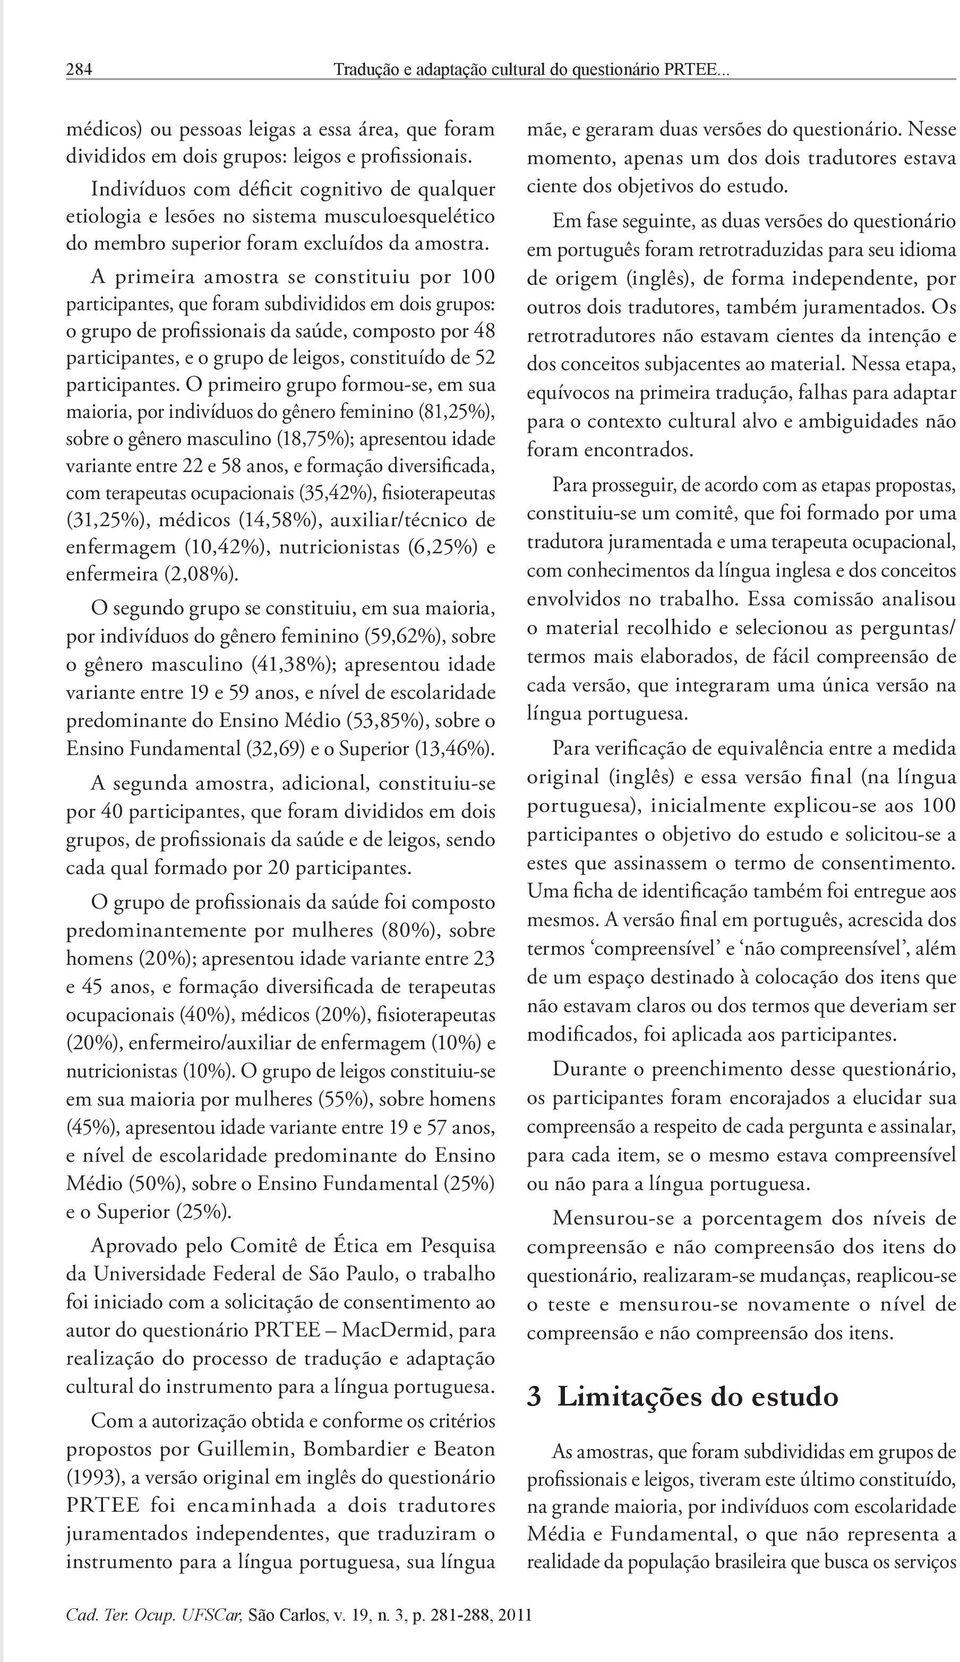 PDF) Tradução e Adaptação Cultural do Questionário PRTEE (patient-rated  tennis elbow evaluation) para a Língua Portuguesa